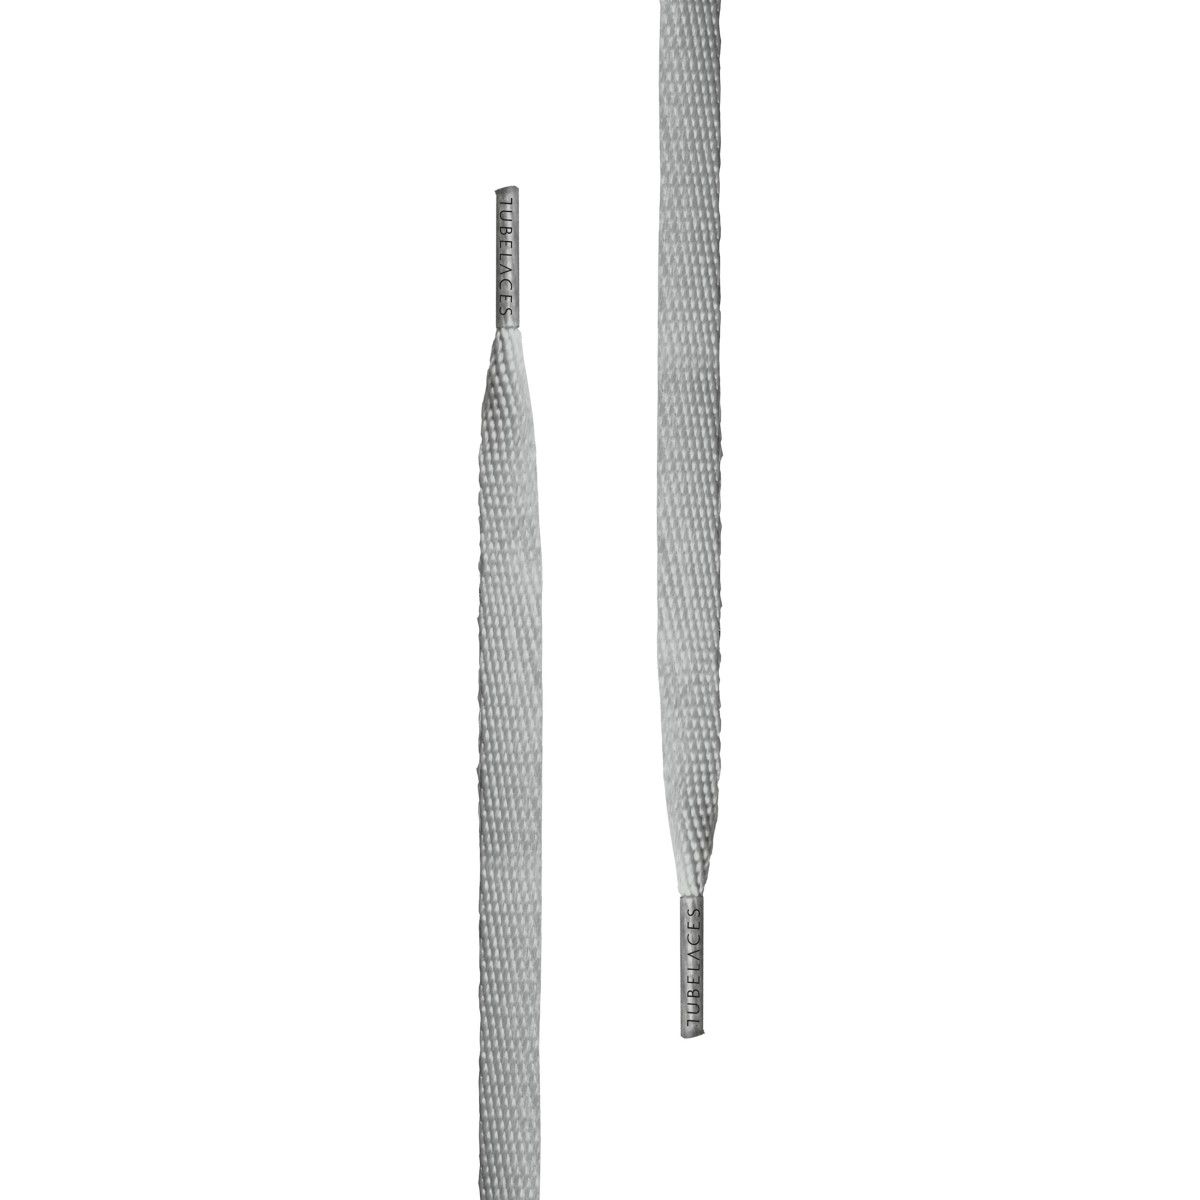 Tubelaces White Flat Unisex Shoelaces Light Grey 120 cm